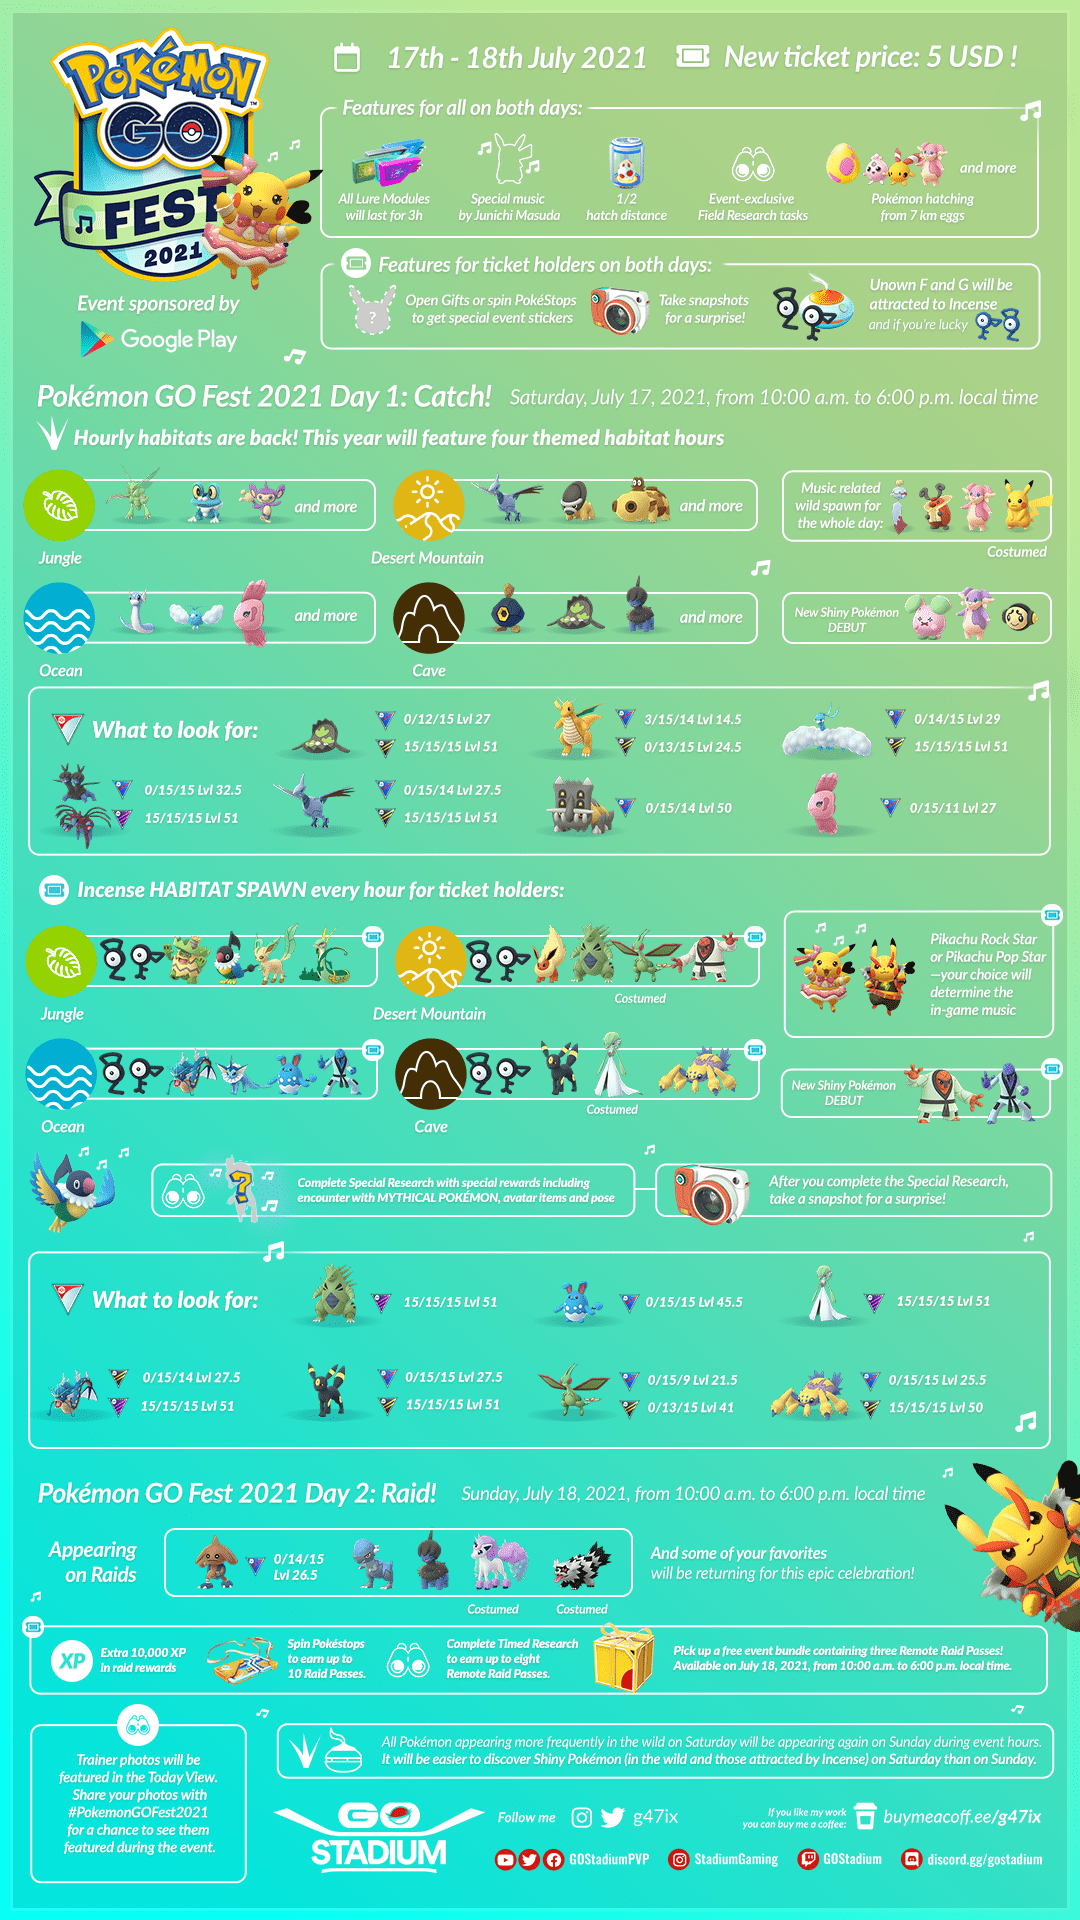 Pokémon GO Fest 2021: Niantic publishes details (event guide)